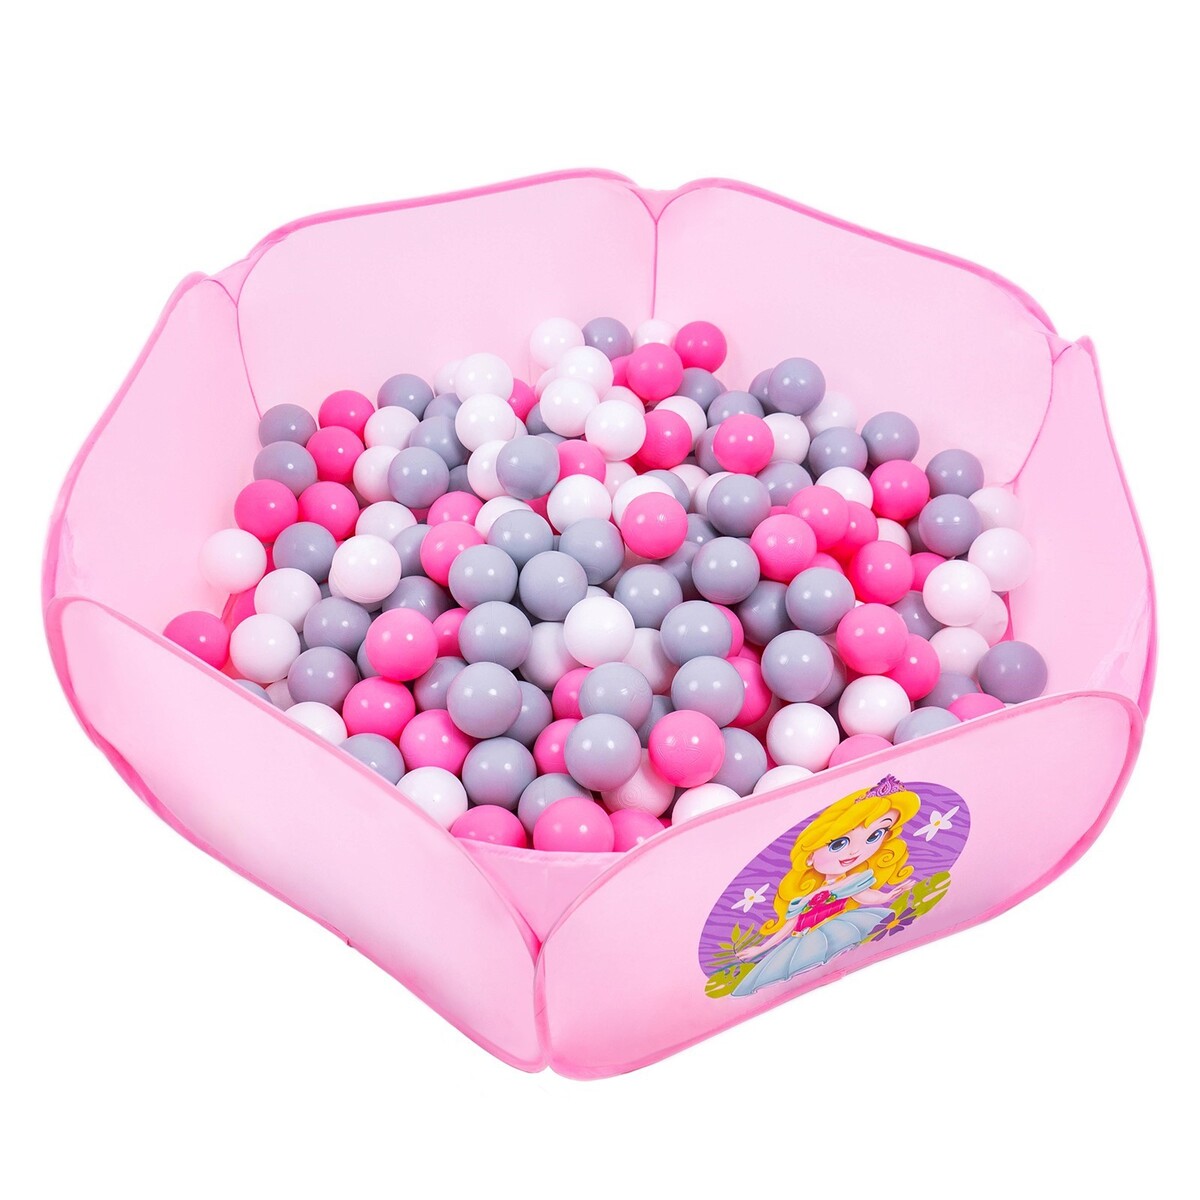 Шарики для сухого бассейна с рисунком, диаметр шара 7,5 см, набор 150 штук, цвет розовый, белый, серый шарики для сухого бассейна 30 штук диаметр 5 см